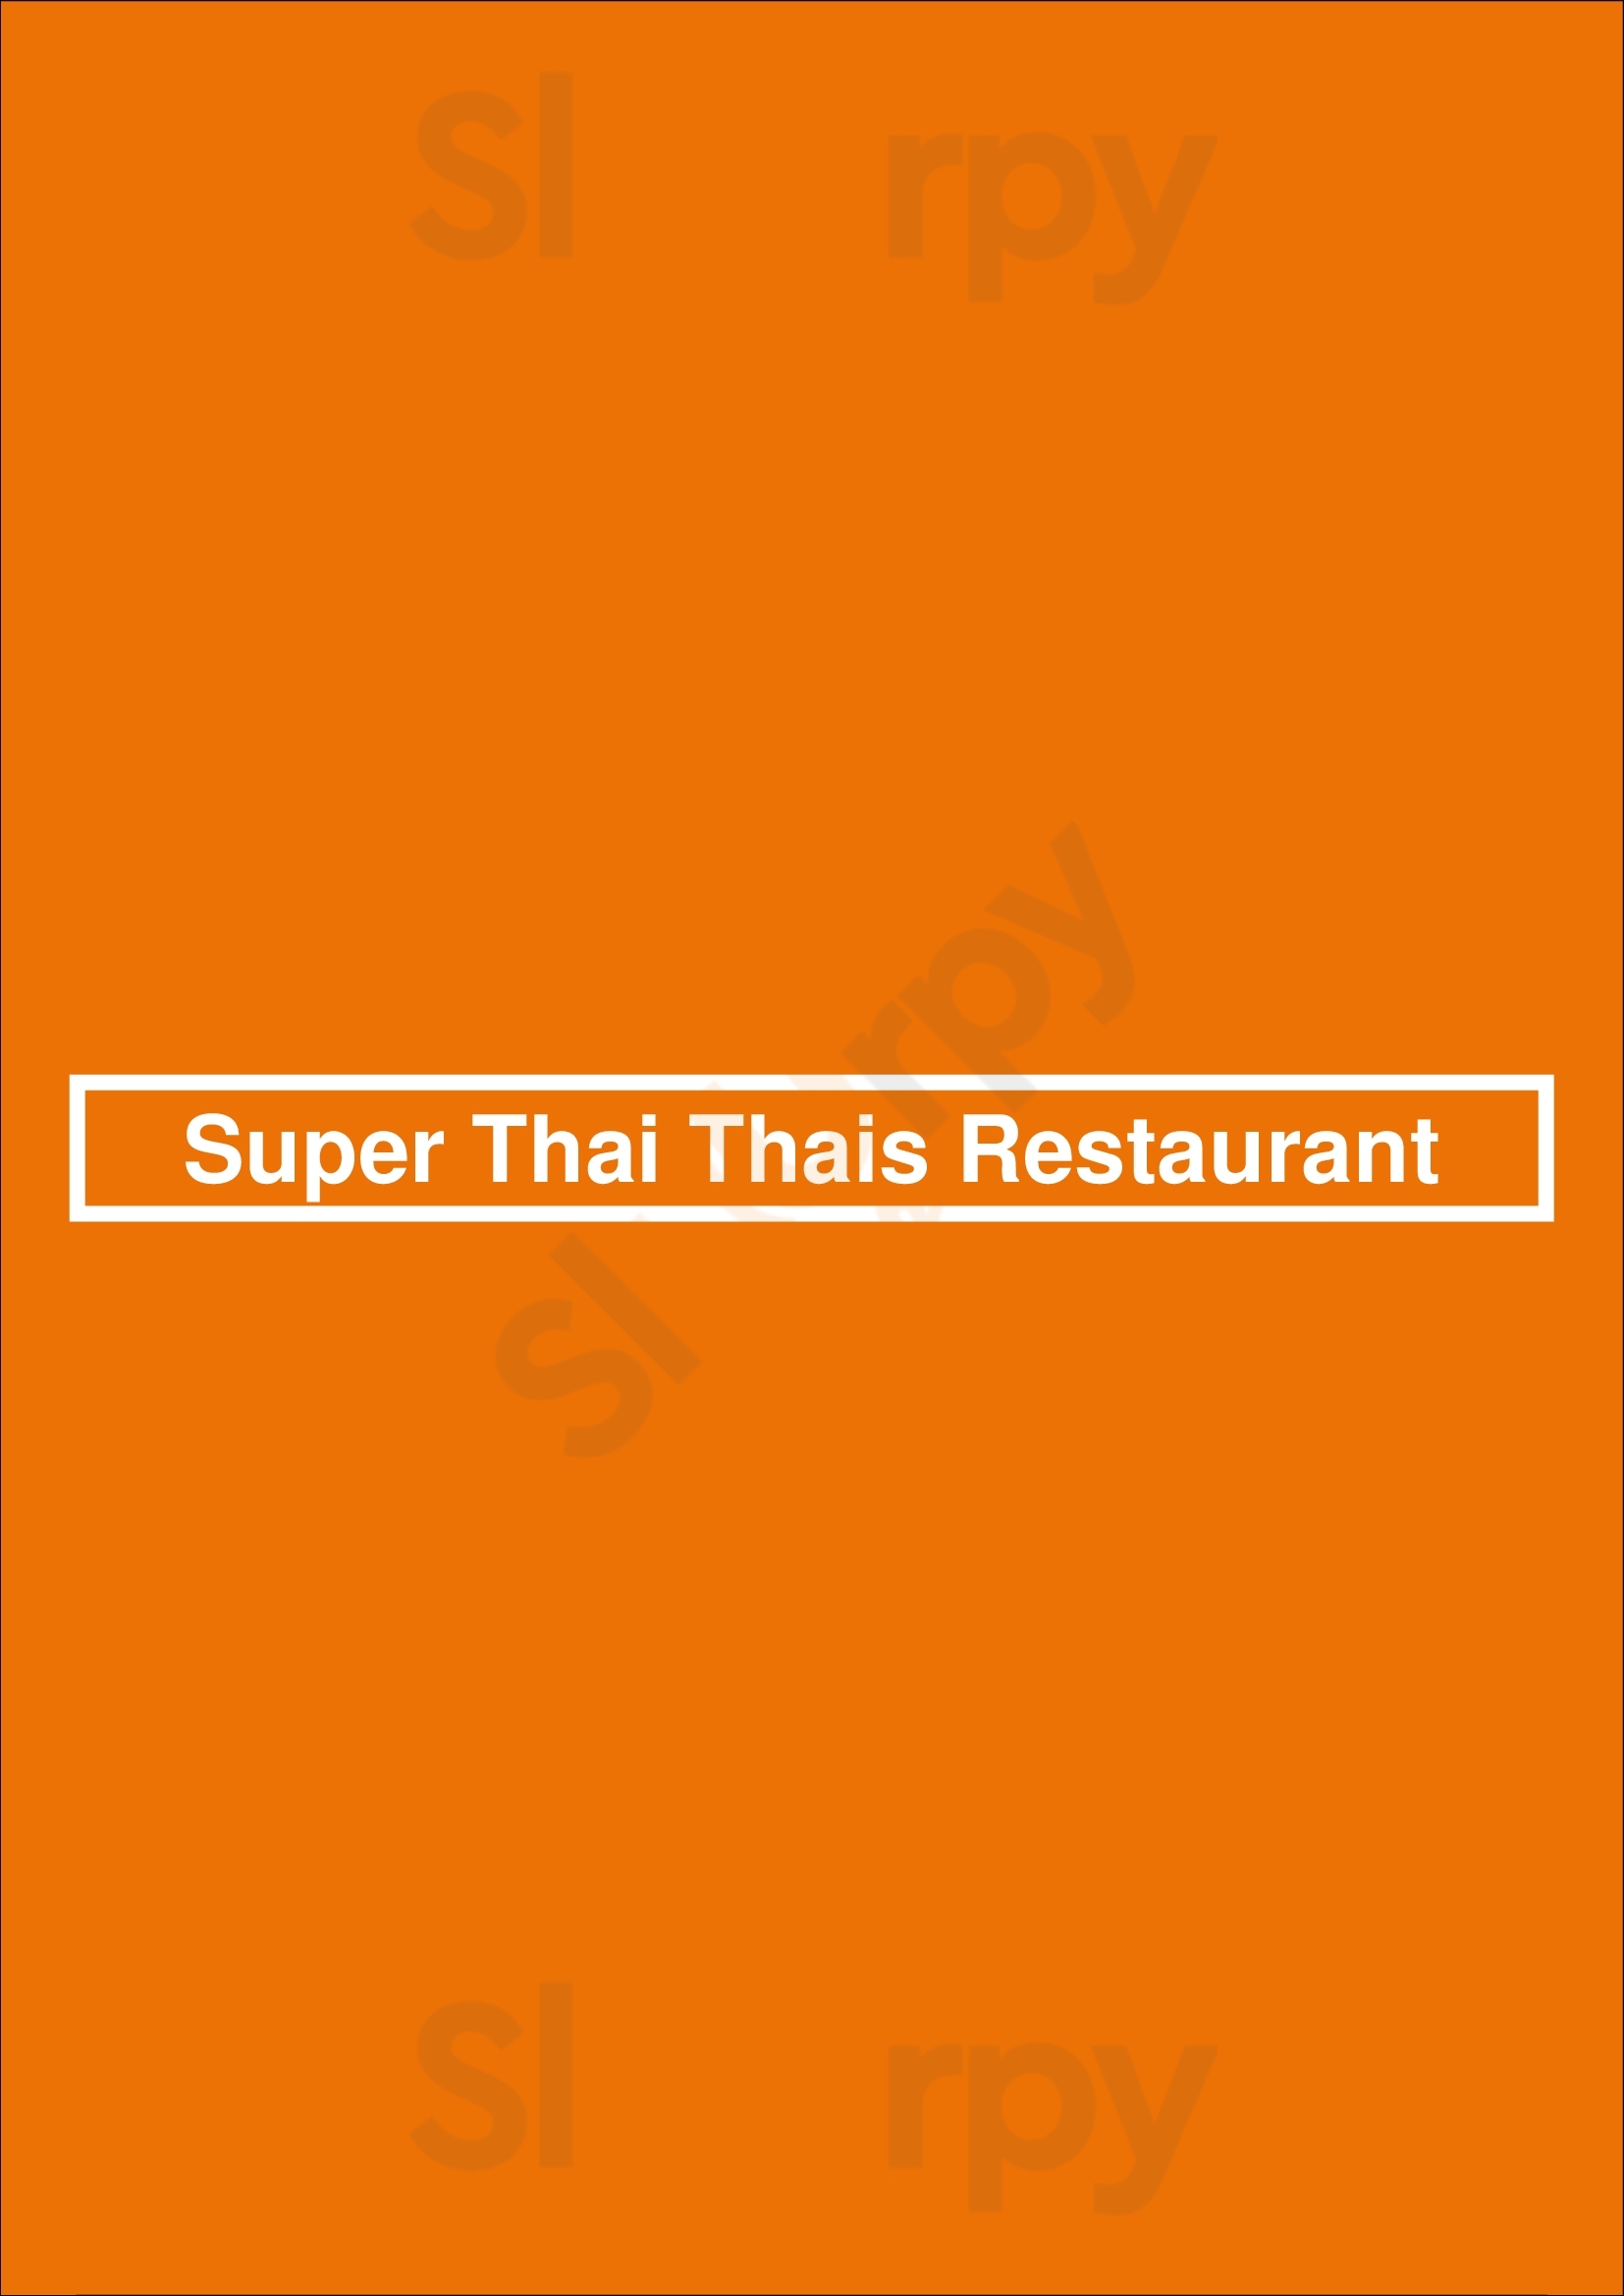 Super Thai Thais Restaurant Alkmaar Menu - 1